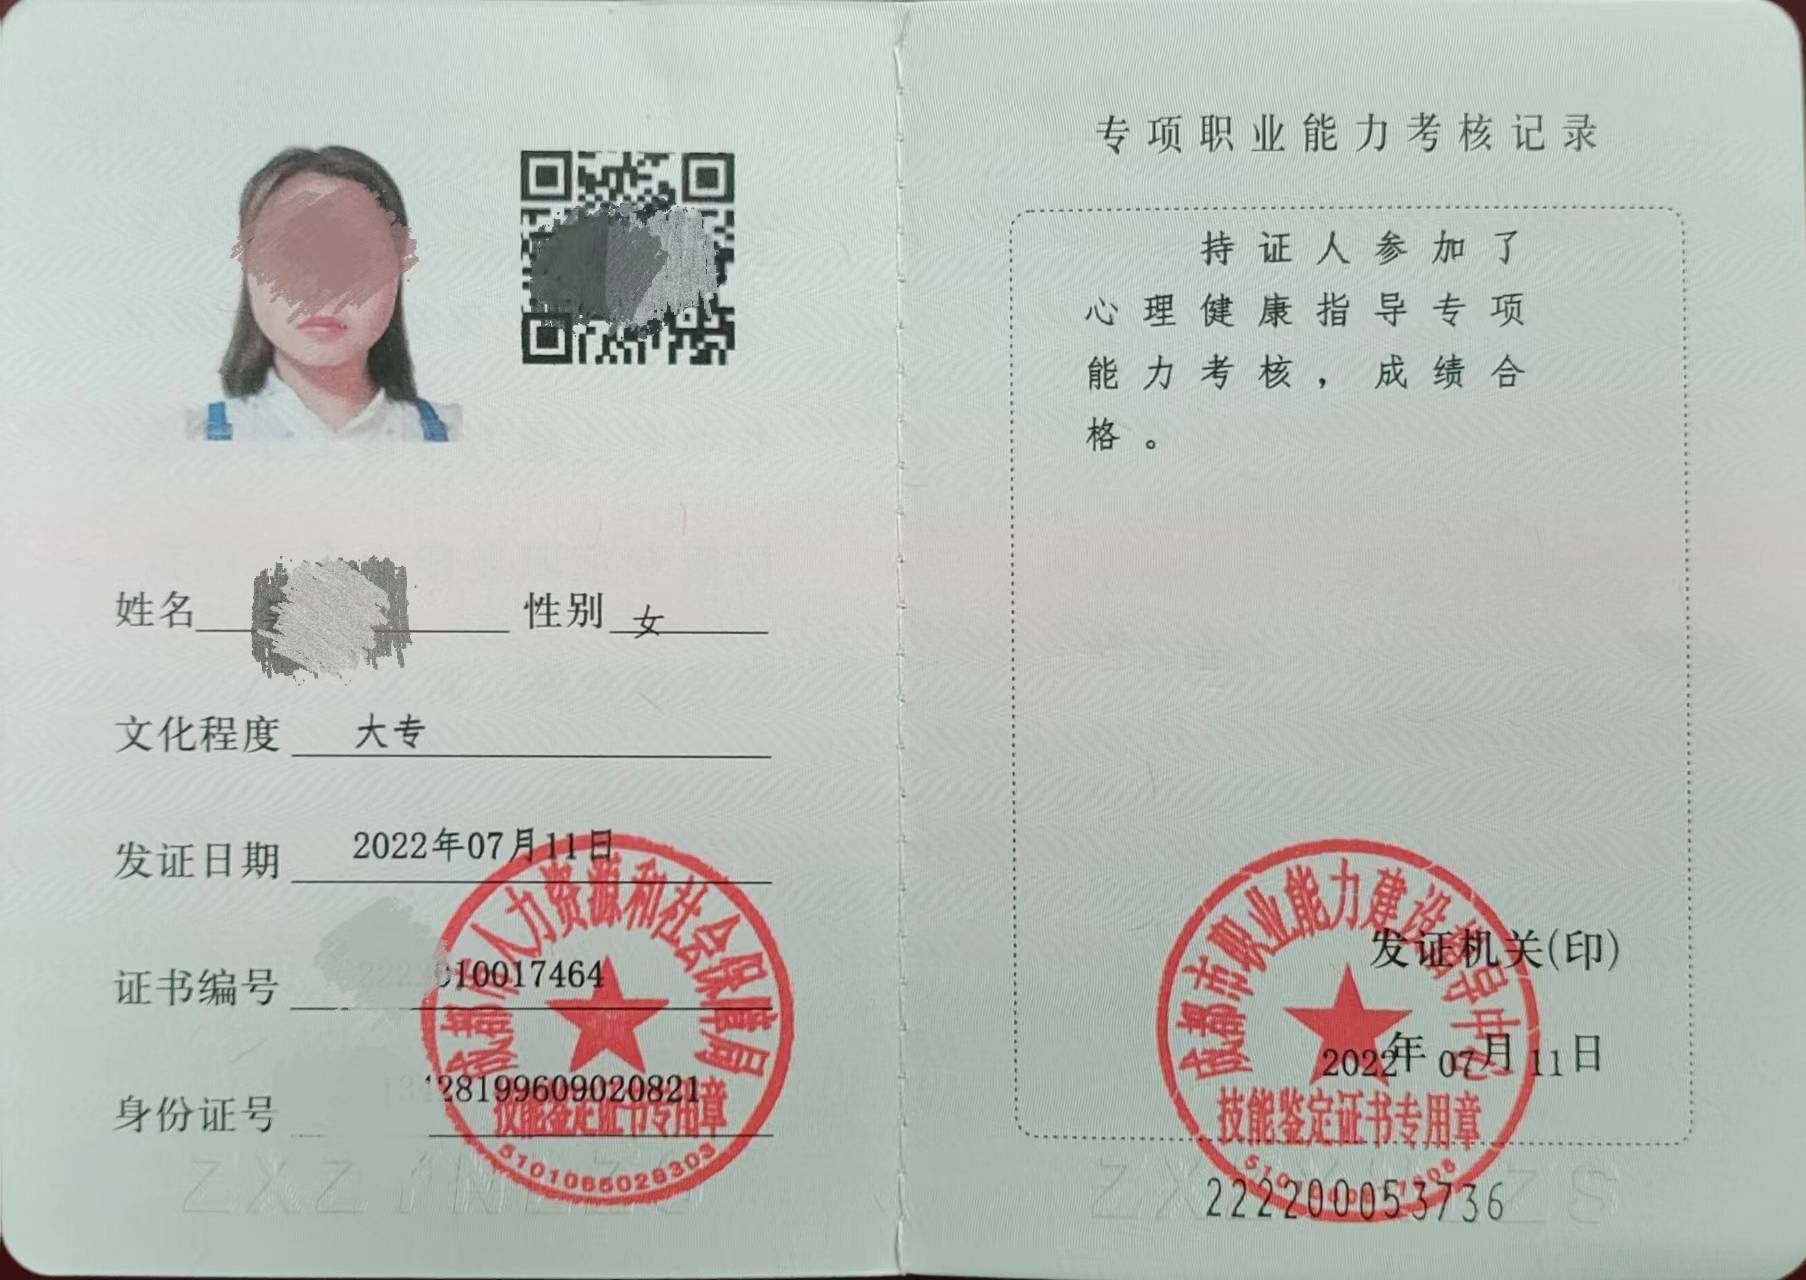 2,报名资料:蓝底免冠证件照;身份证正反面照片,学历证书复印件